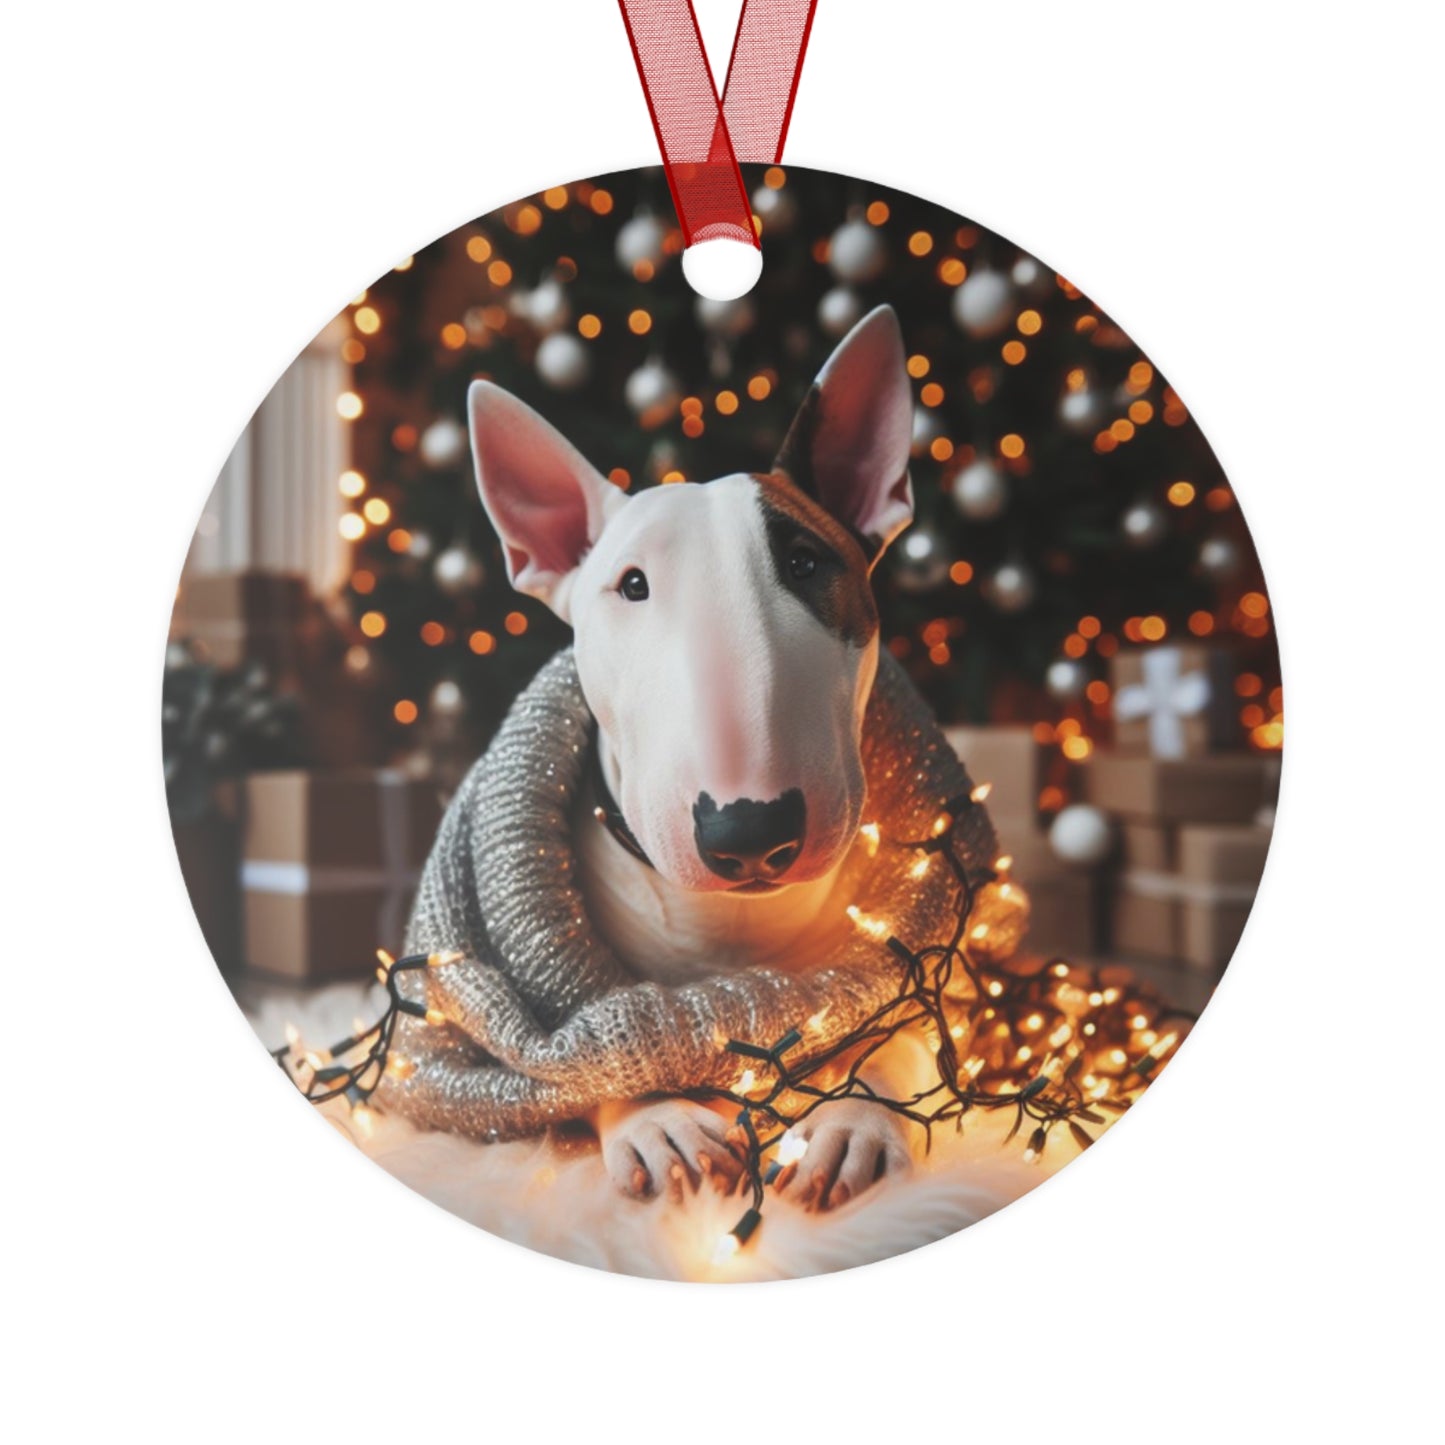 Eyepatch Bull Terrier Metal Ornaments